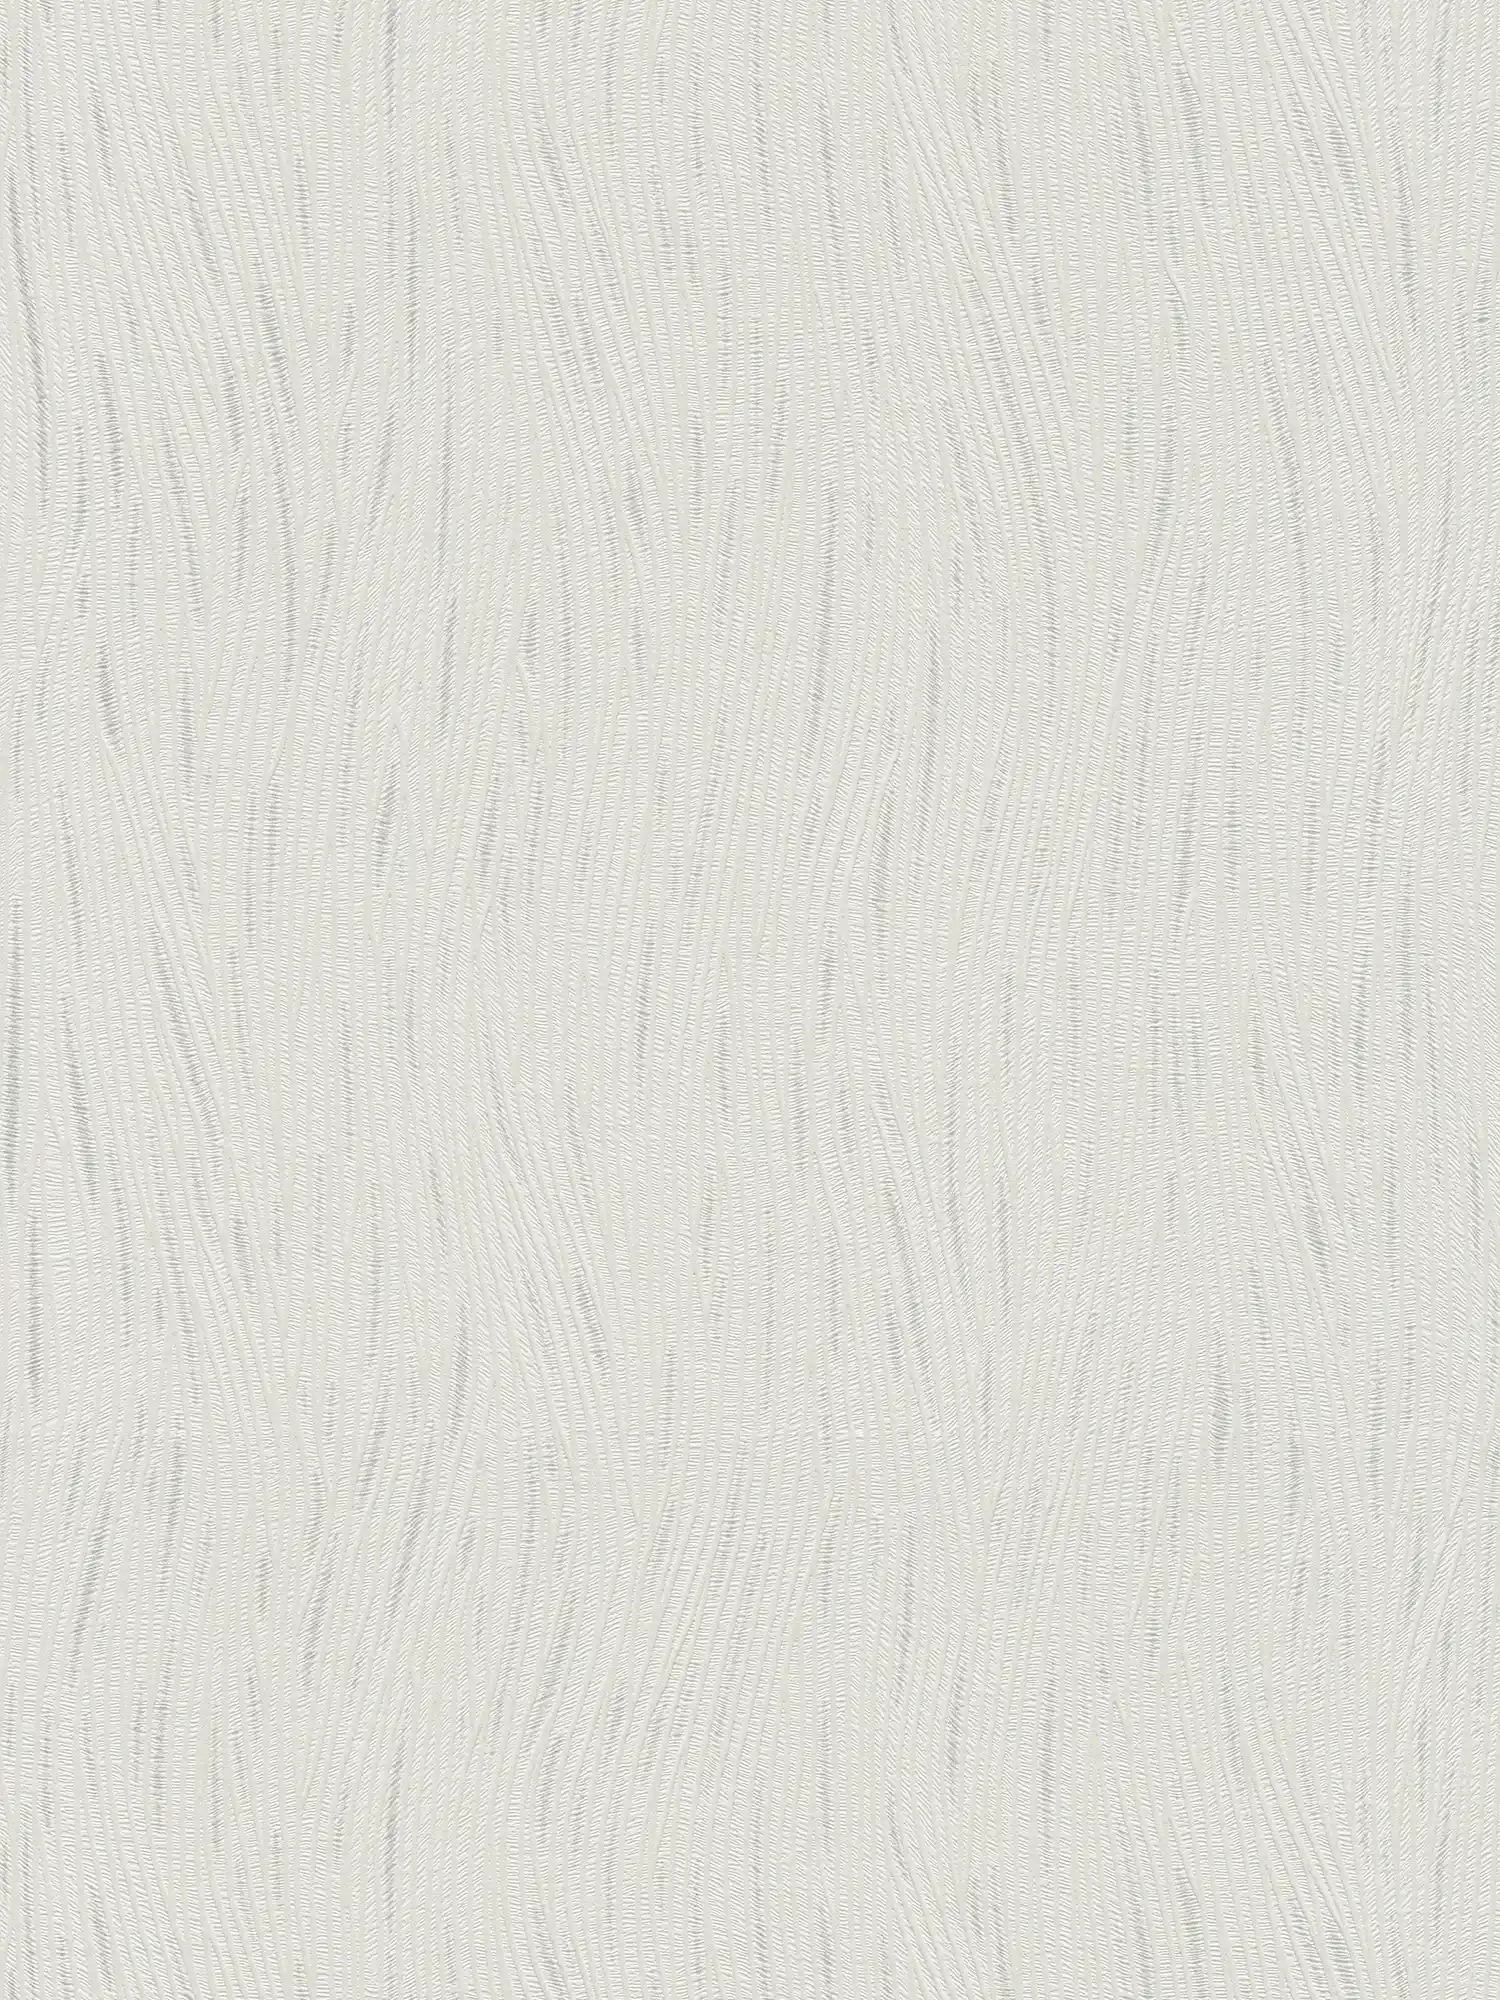 Grafiktapete mit wellenartigem Linienmuster und Metallic-Akzenten – Weiß, Silber
